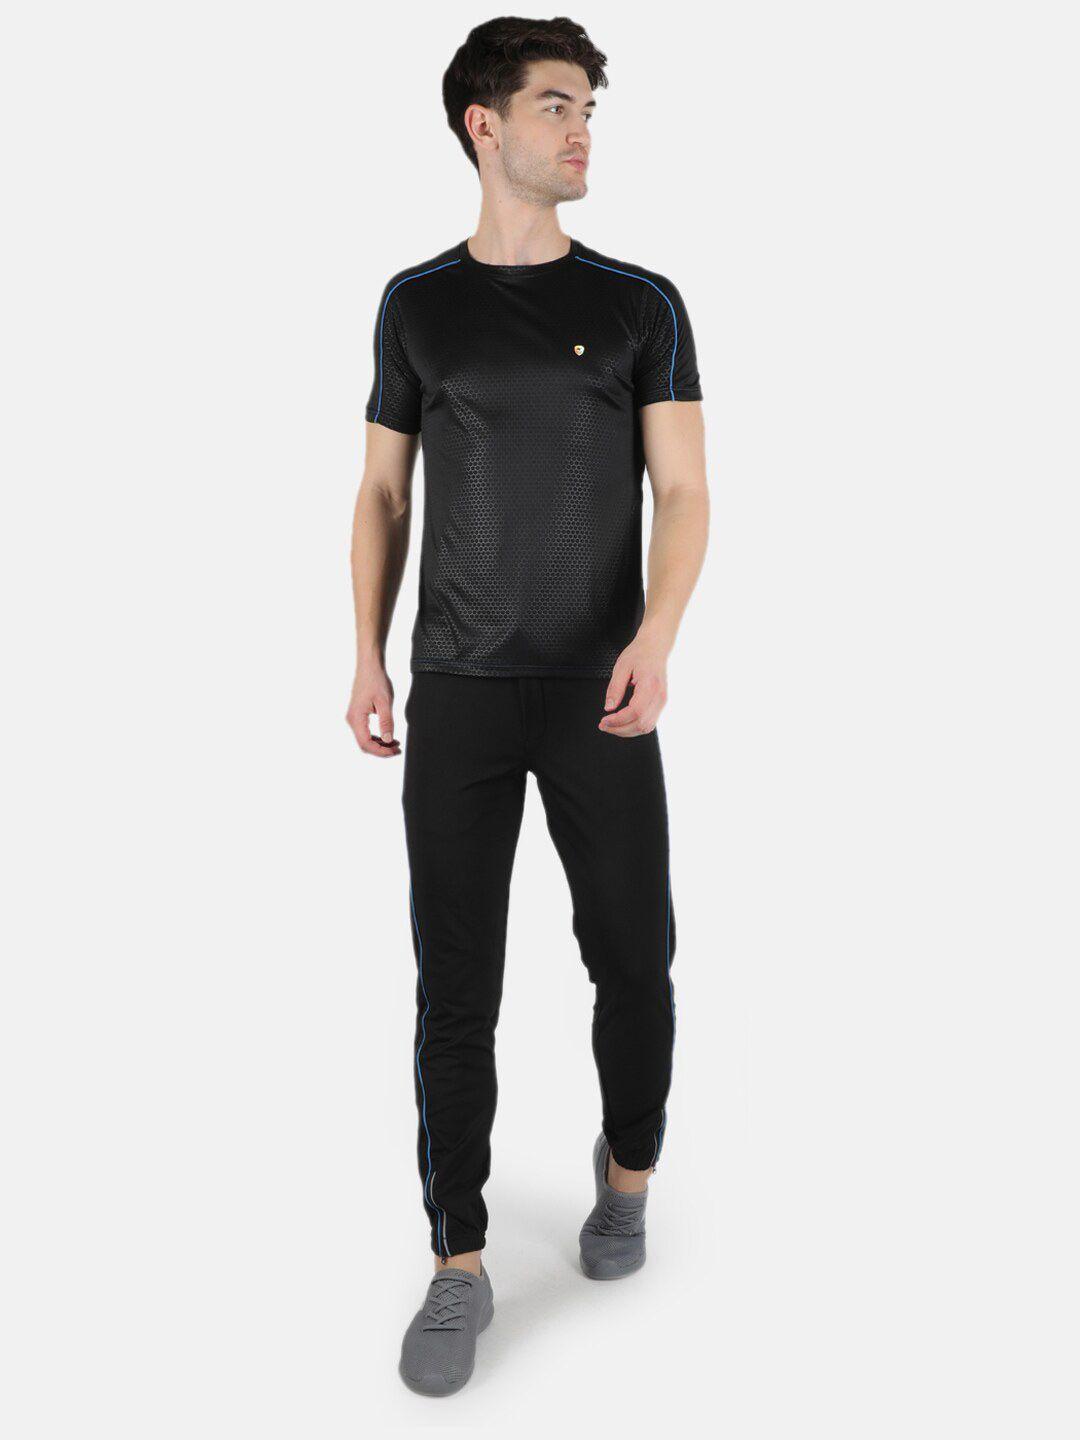 monte carlo men black printed t-shirt with pyjamas